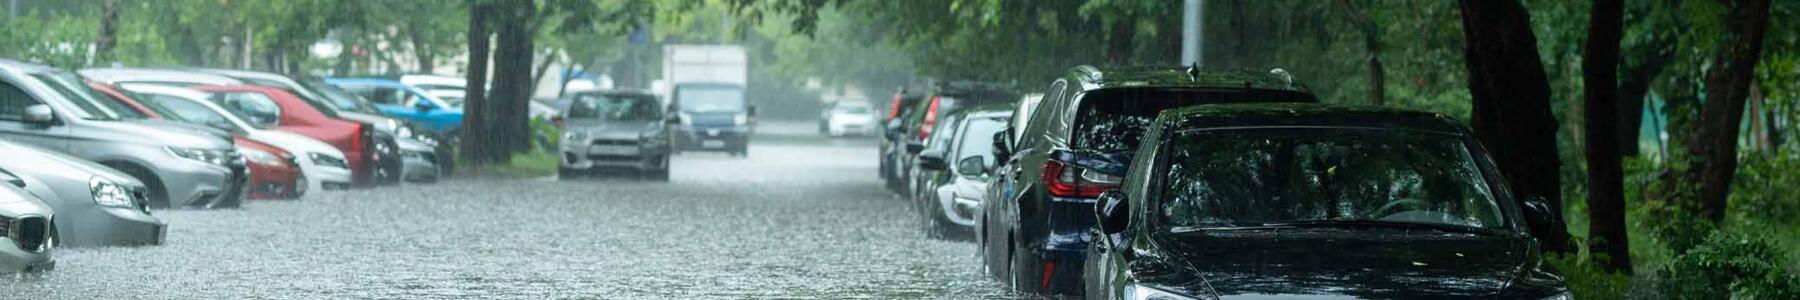 Hochwasserschaden am Auto: Welche Versicherung zahlt?